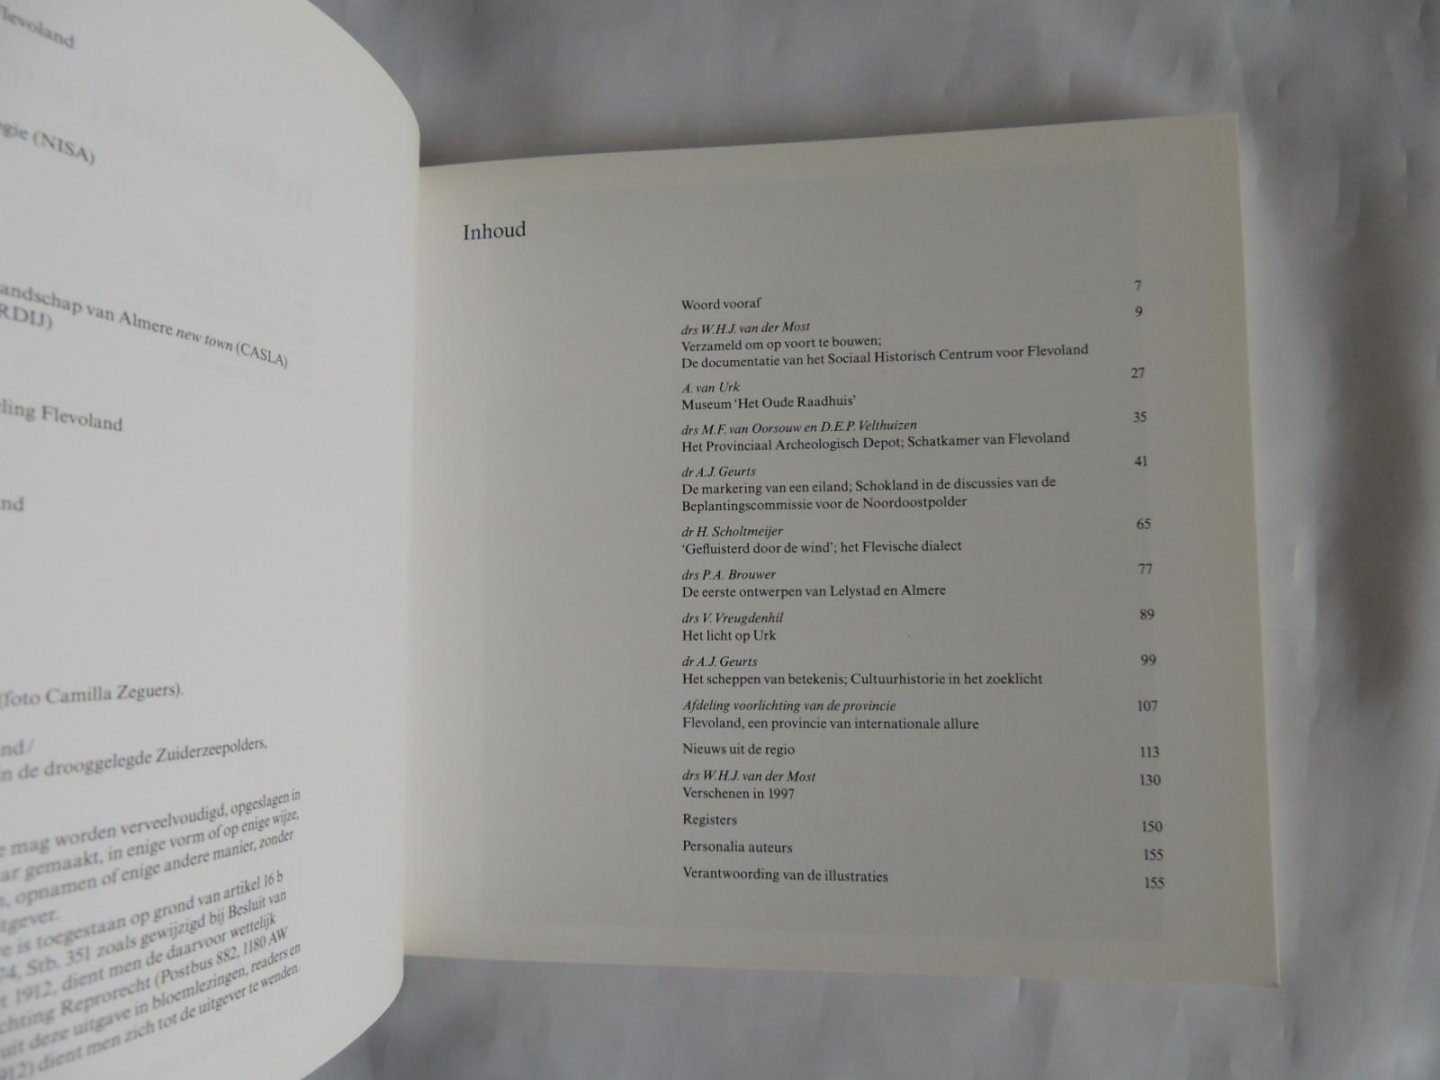 andre geurts a./// brouwer p a  /// van der most .///  ea. - Cultuur historisch jaarboek voor Flevoland 1998.  In Flevoland verzameld